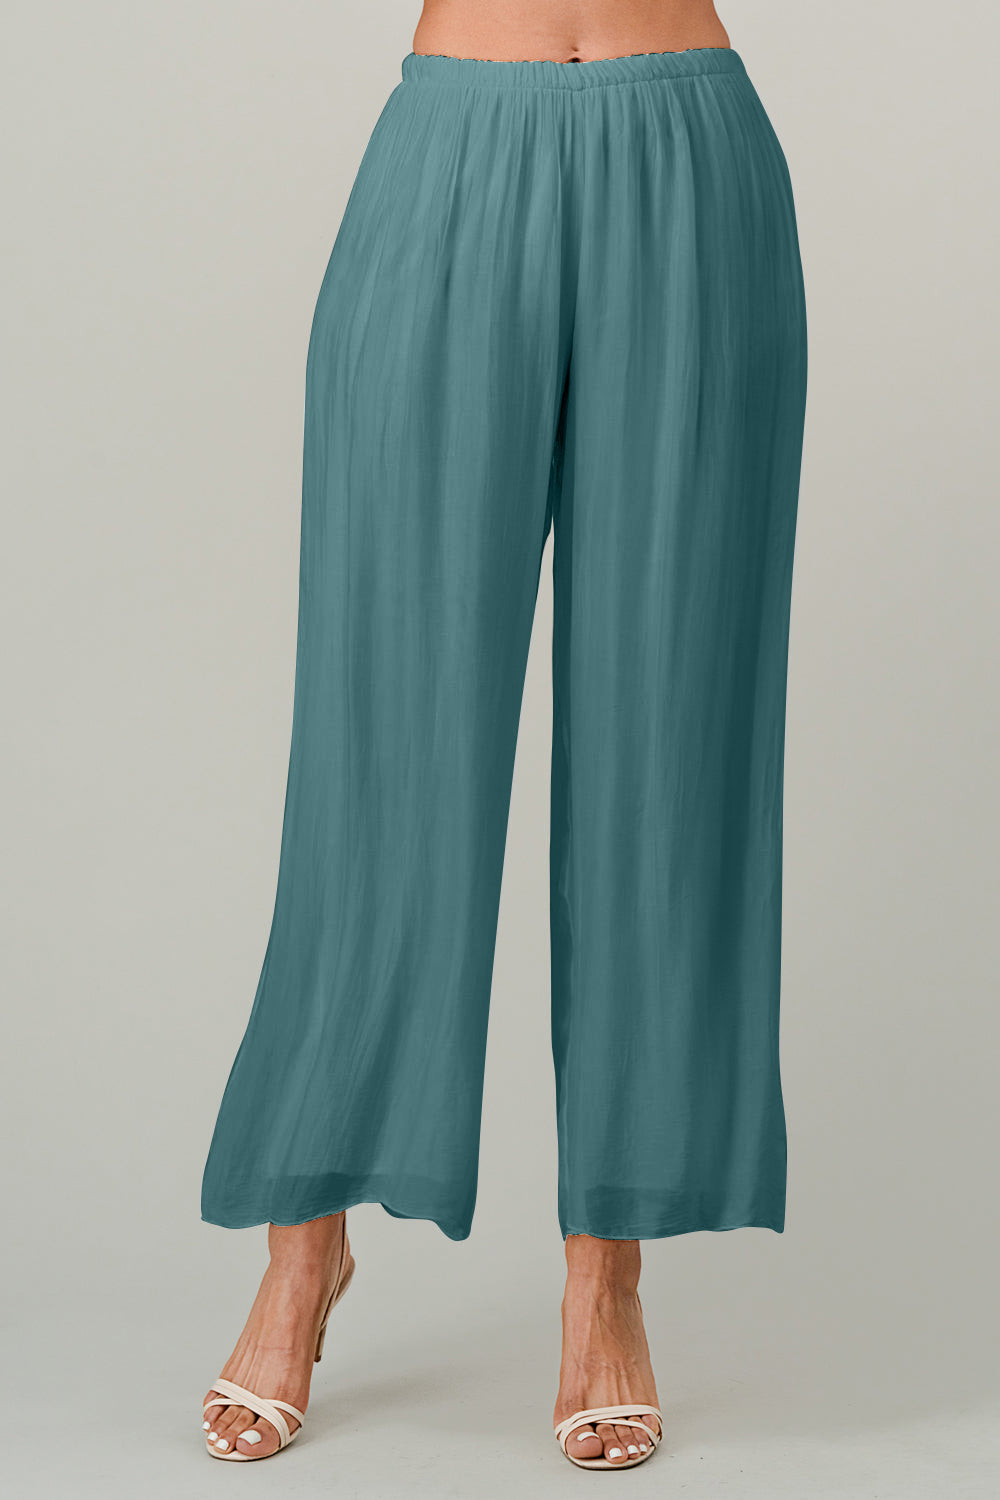 Raw Moda Italian Long Loose Silk Pants